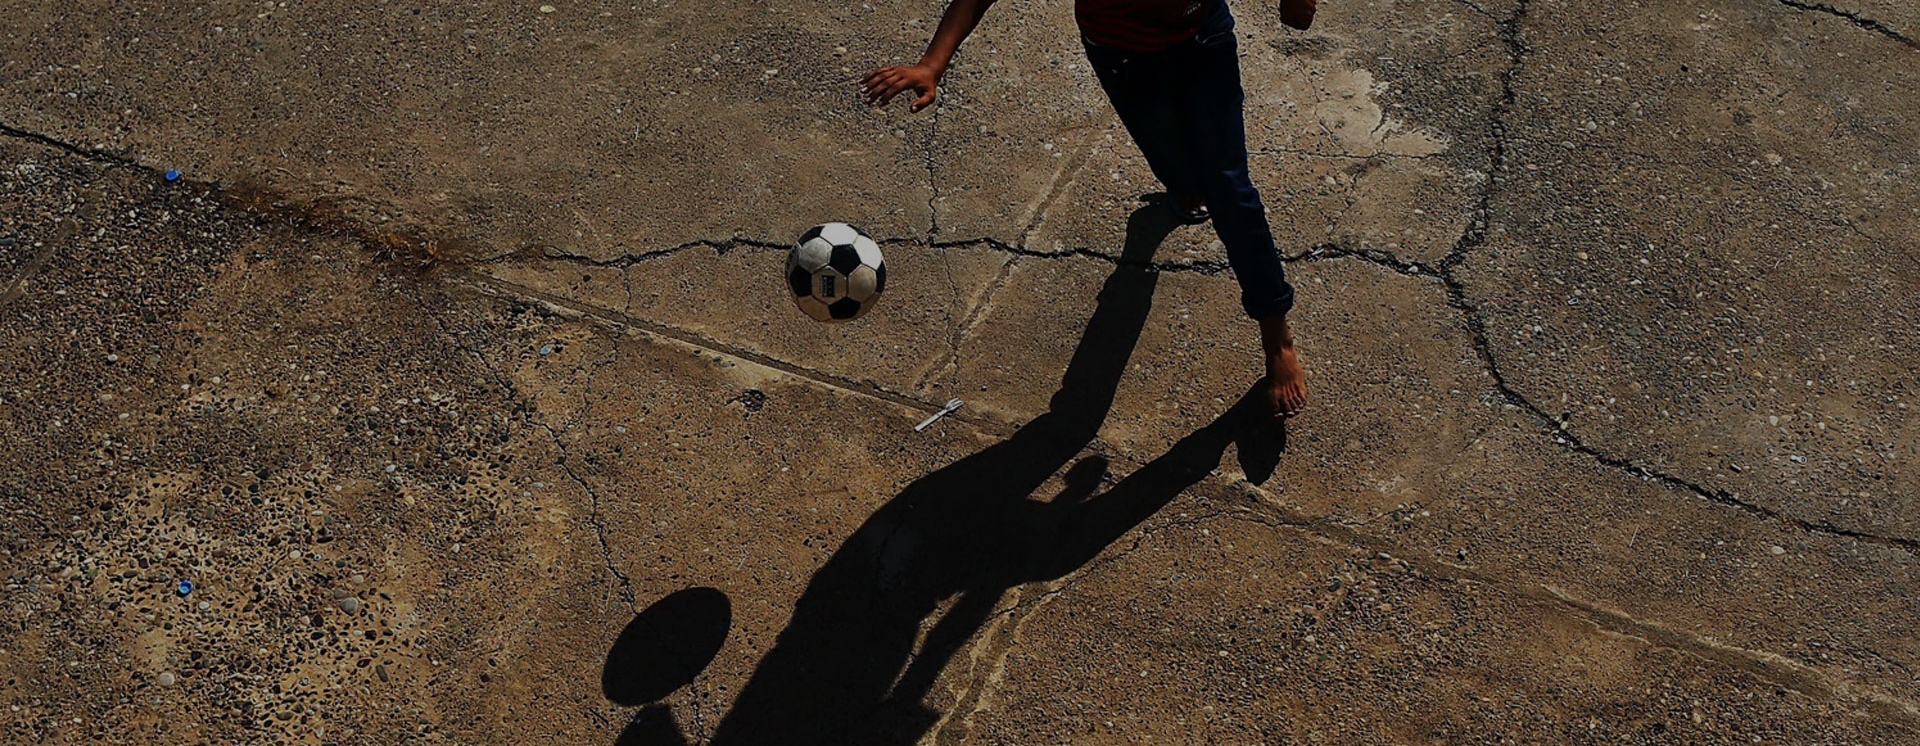 ISIS και ποδόσφαιρο: Μια σχέση μίσους και πάθους